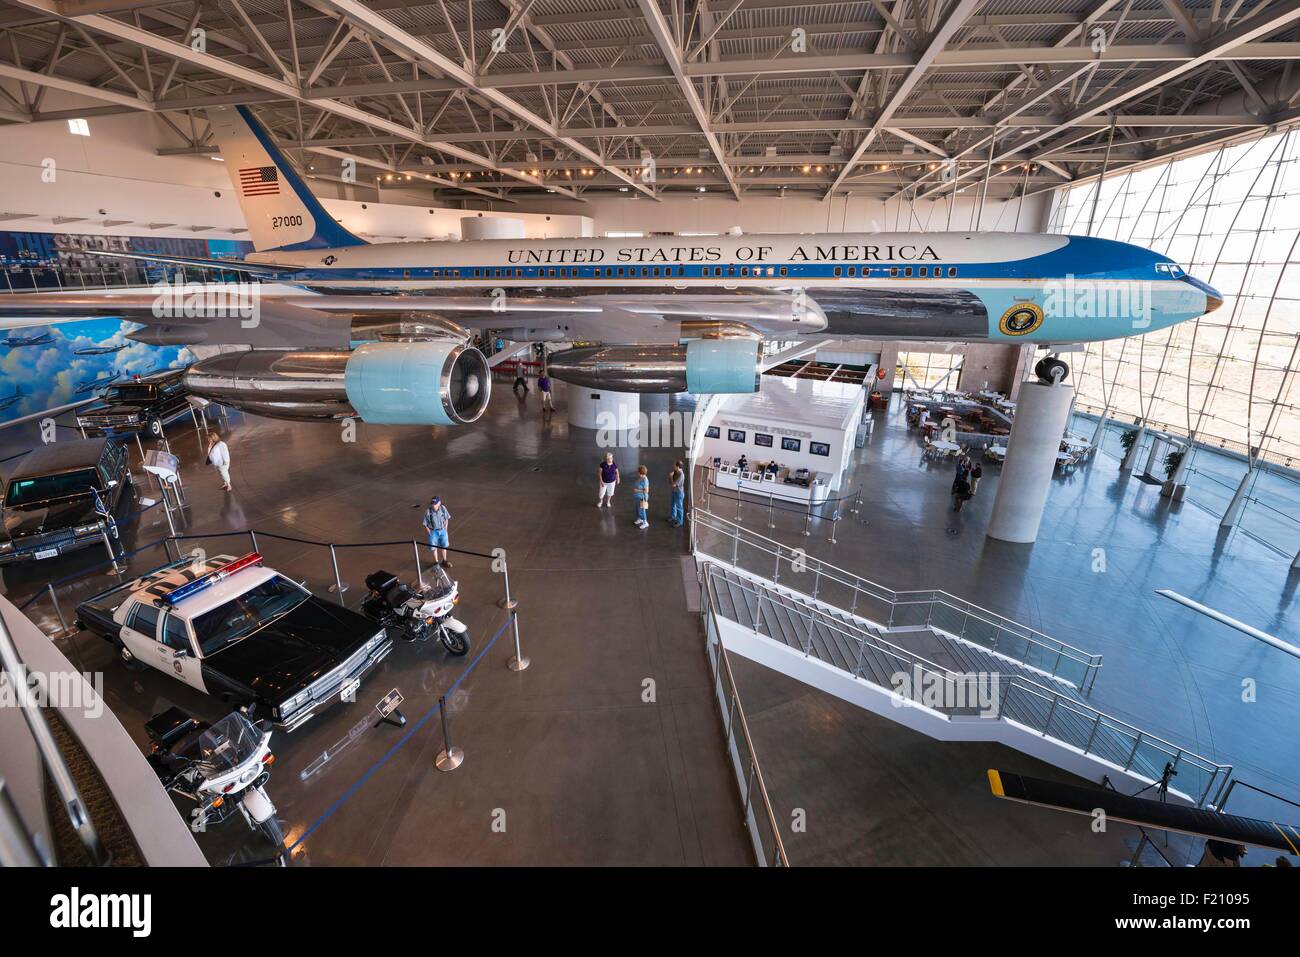 United States, California, Simi Valley, la Ronald Reagan Presidential Library and museum, exposition mettant en vedette le Boeing 707 Airforce un utilisé par les présidents américains de 1973 à 2001 Banque D'Images